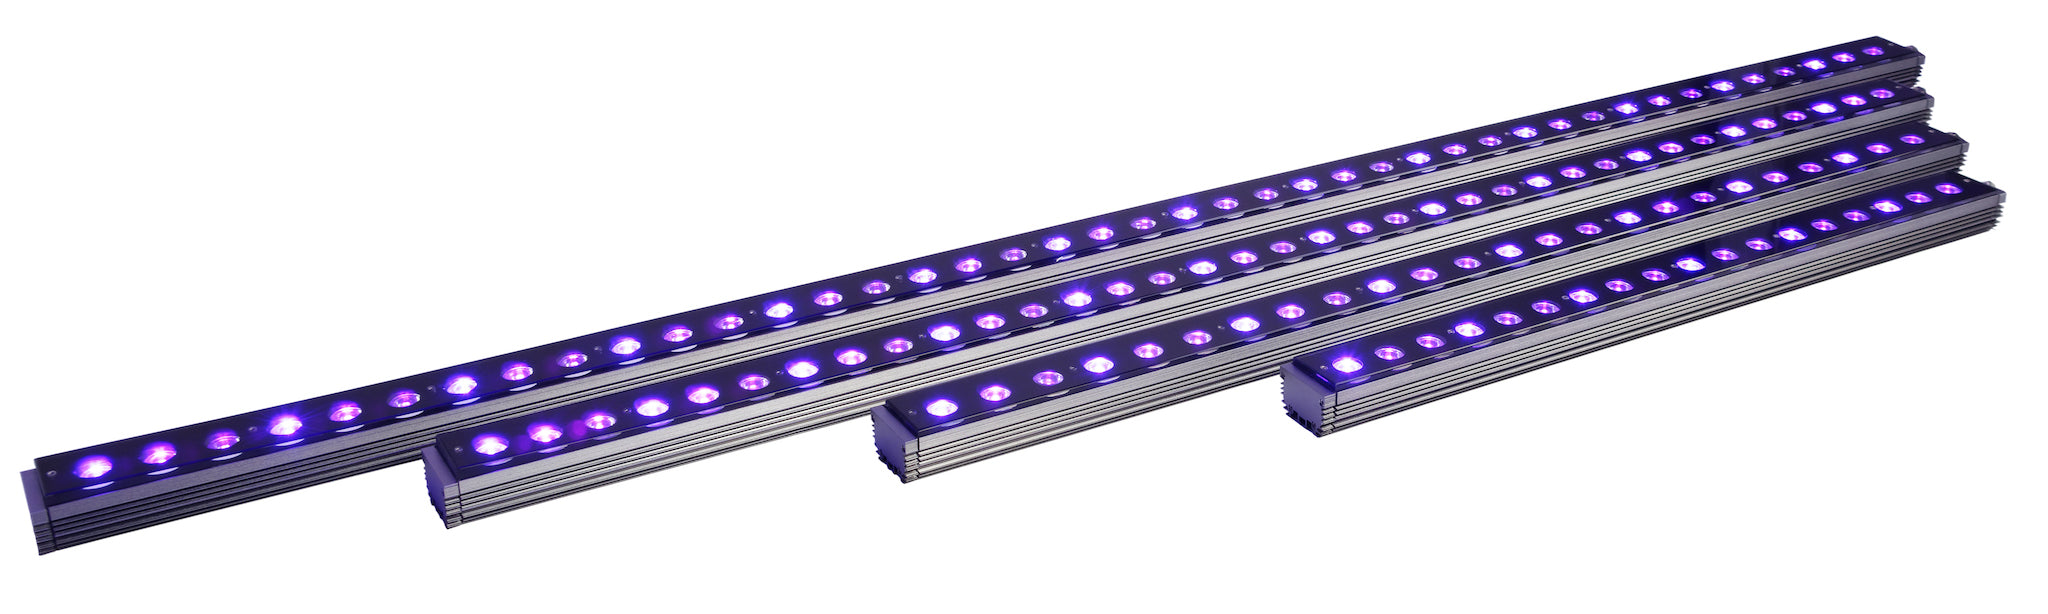 OR3 UV / Violet - شريط LED Reef Aquarium